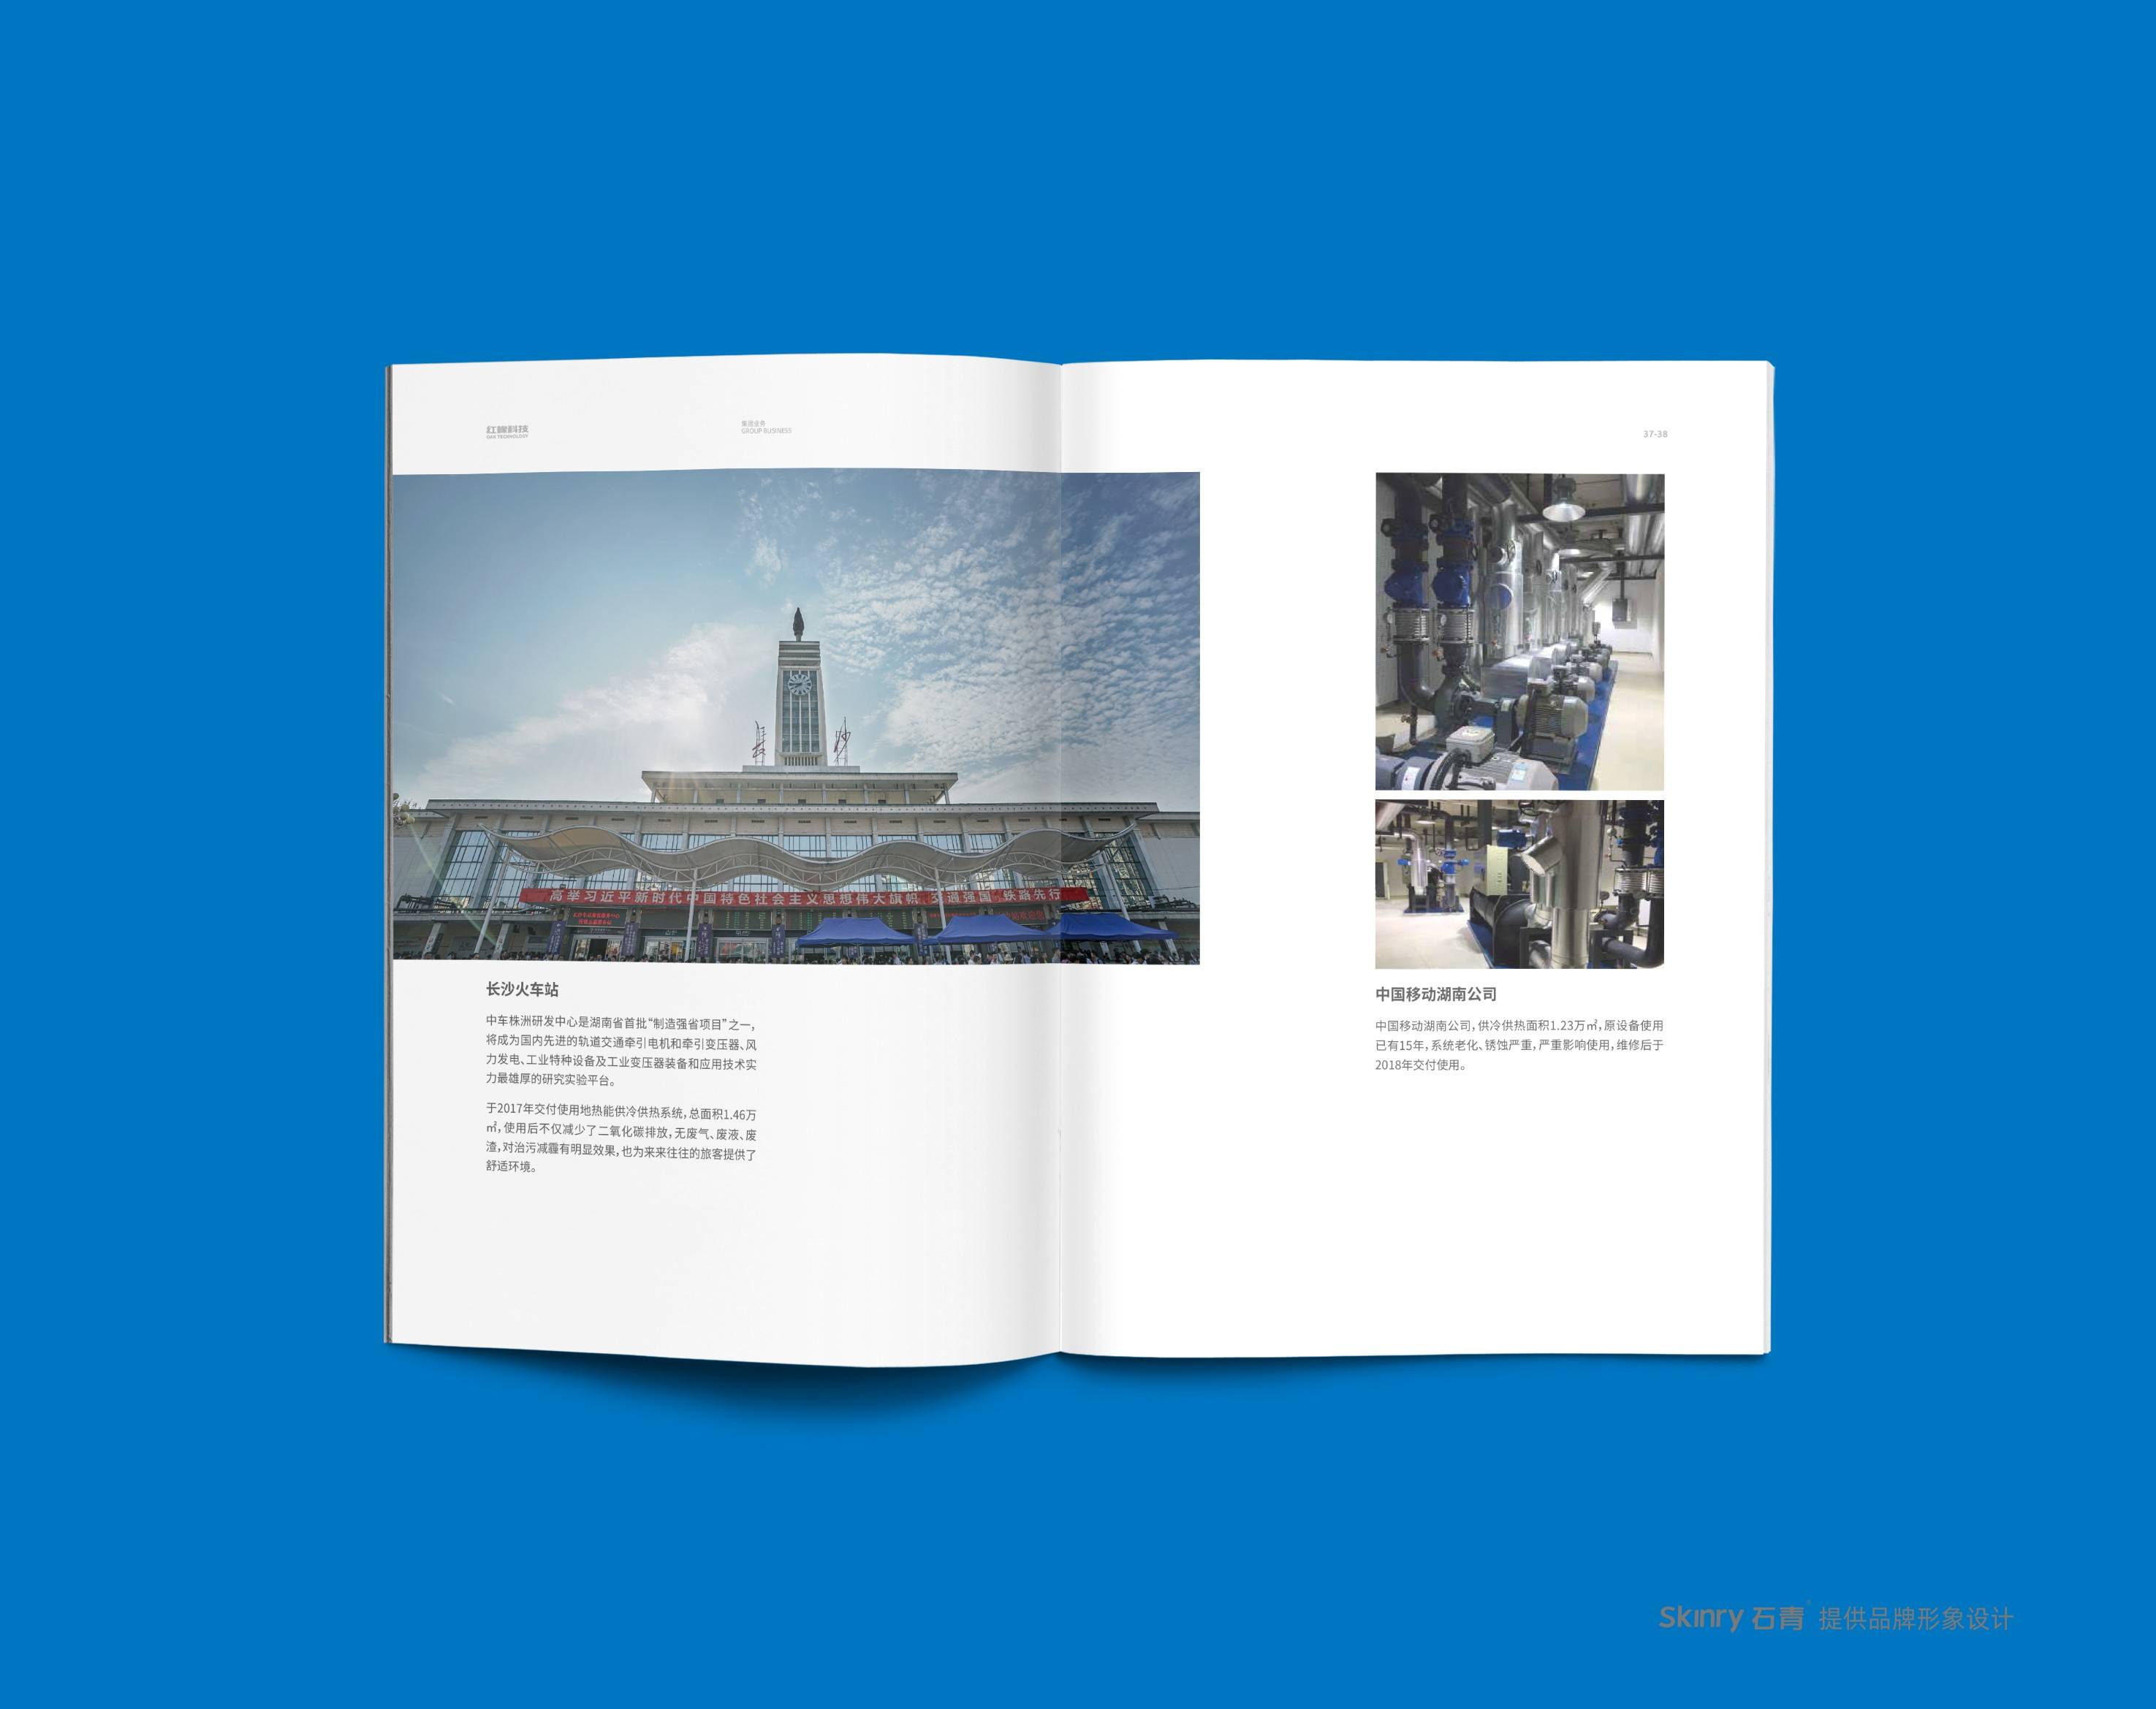 红橡科技企业宣传画册设计